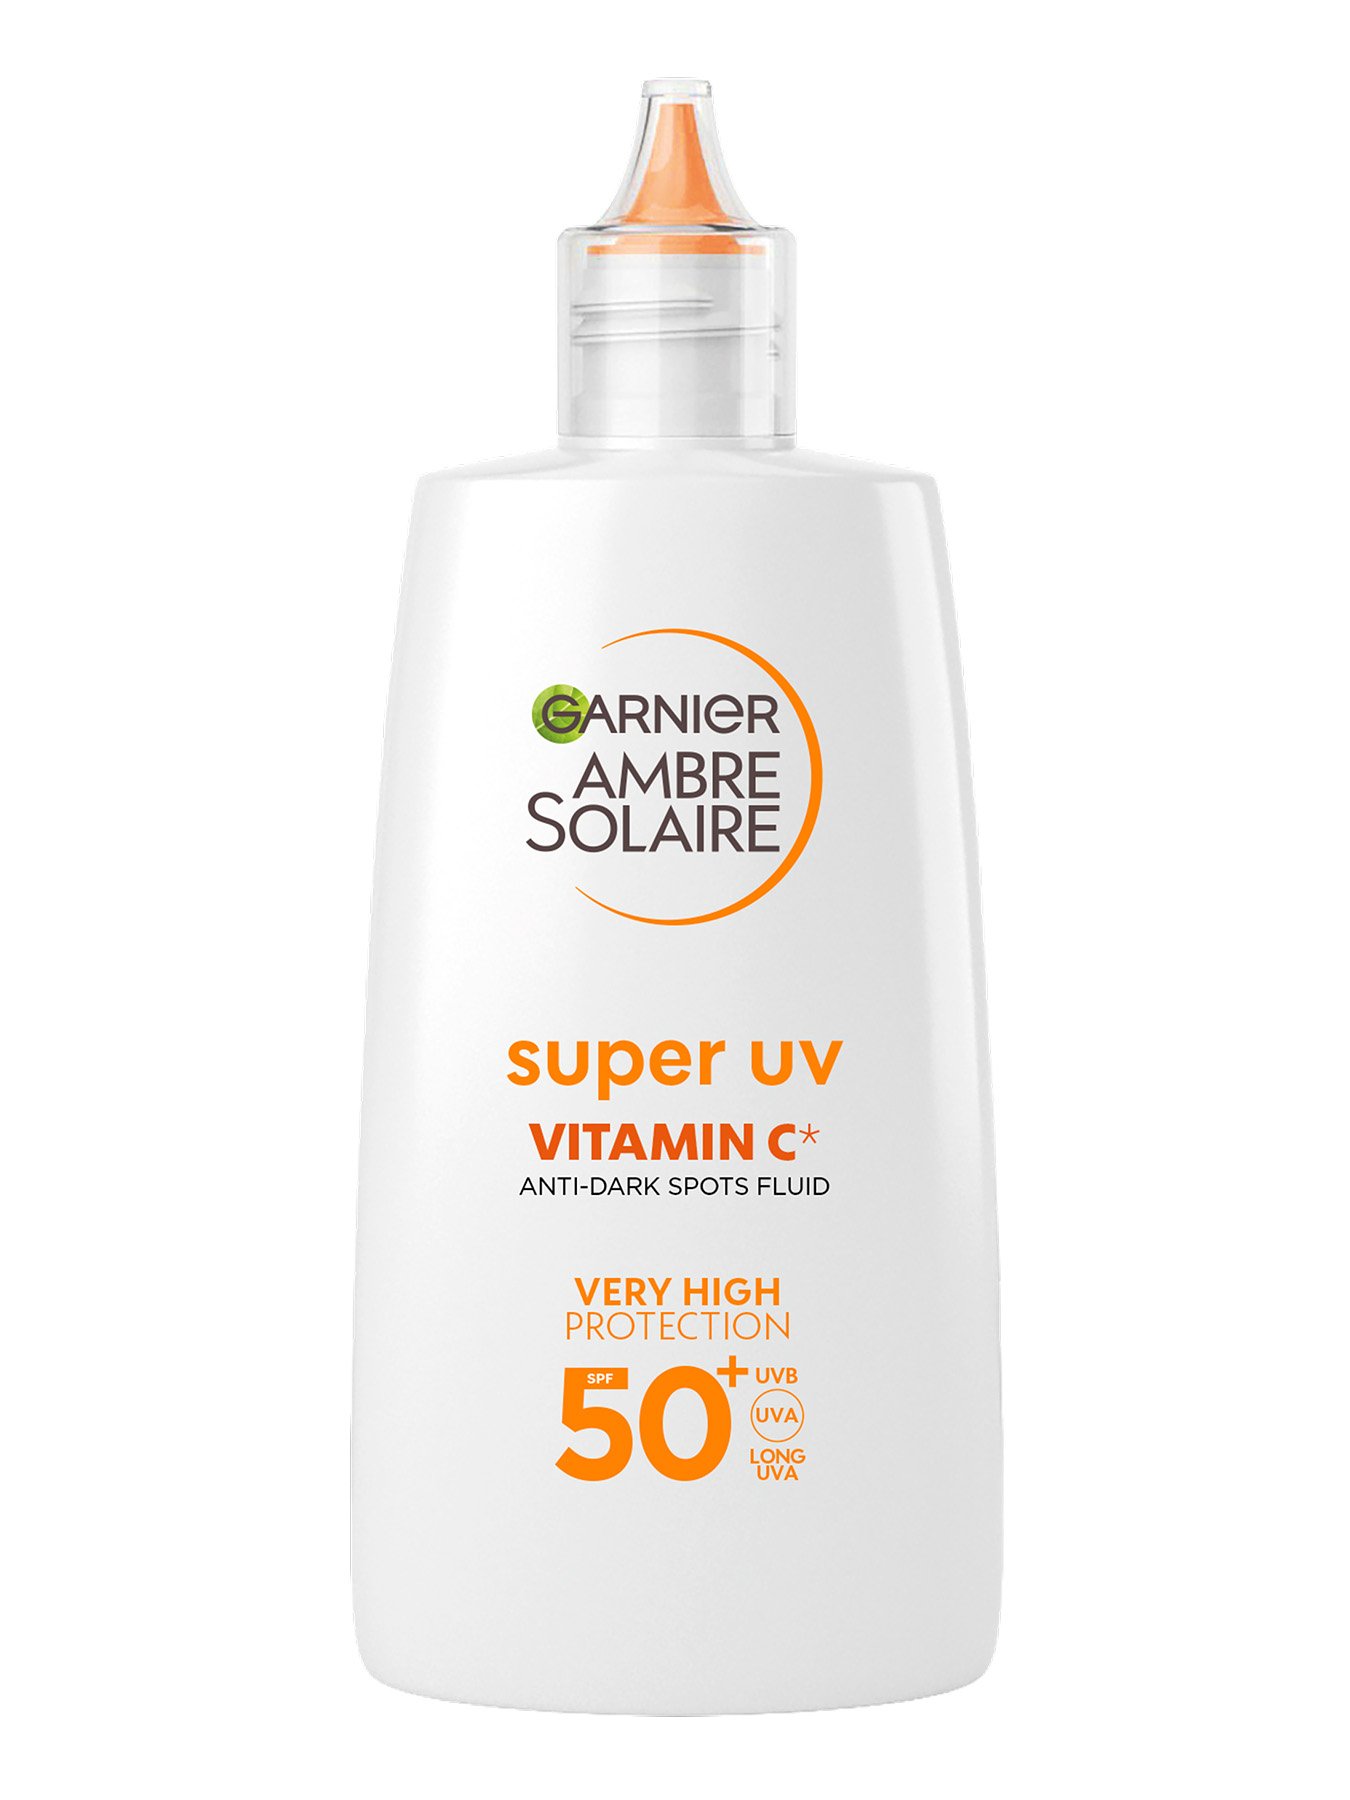 Garnier Ambre Solaire dnevni fluid protiv tamnih fleka sa vitaminom C* i sa veoma visokom zaštitom SPF 50+